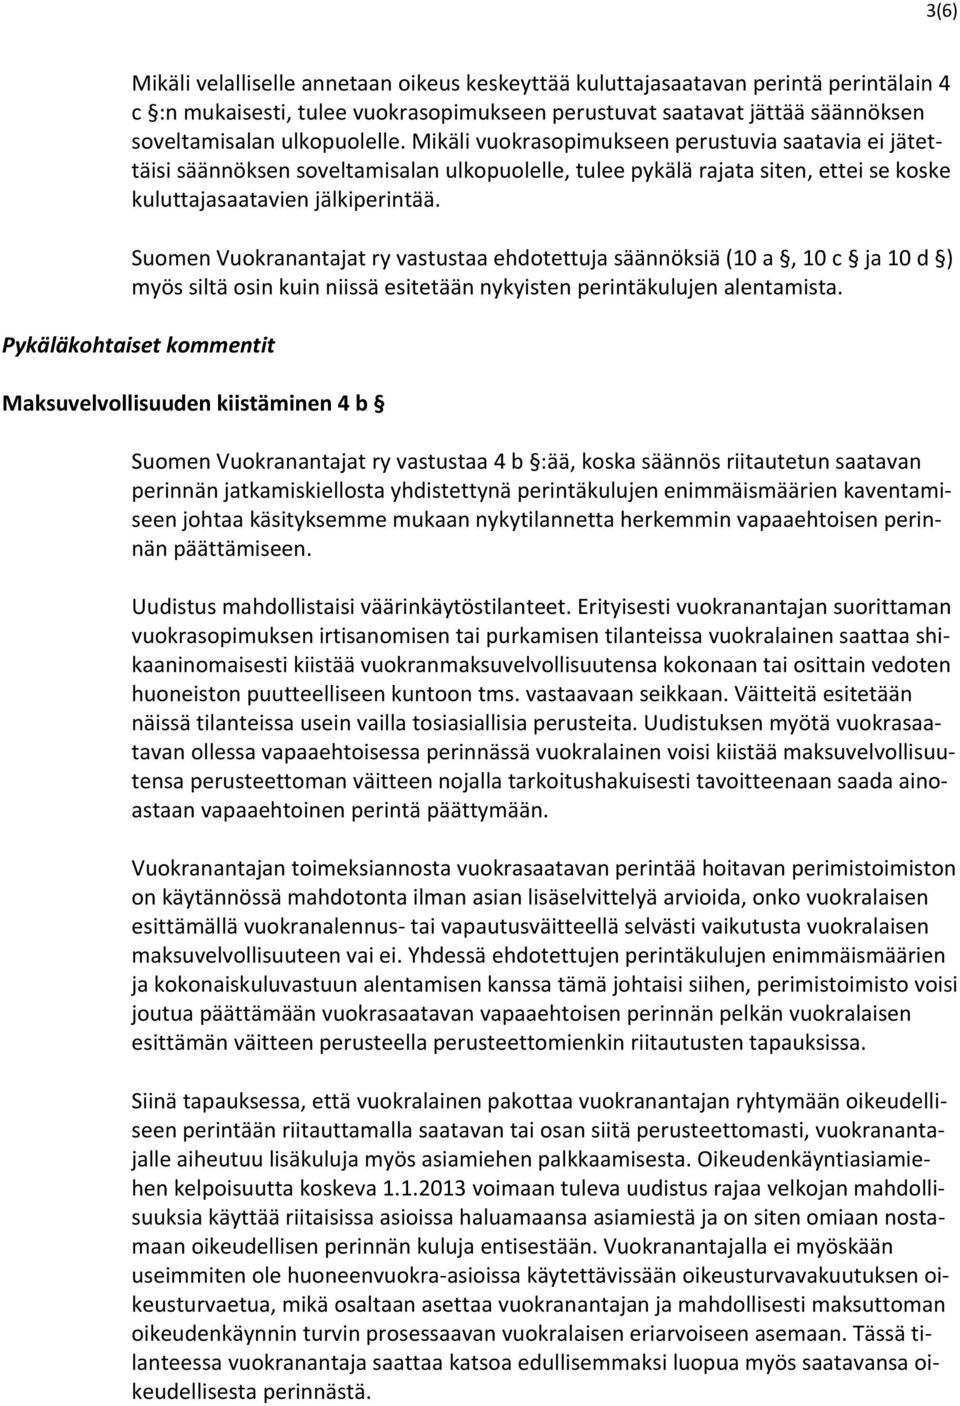 Suomen Vuokranantajat ry vastustaa ehdotettuja säännöksiä (10 a, 10 c ja 10 d ) myös siltä osin kuin niissä esitetään nykyisten perintäkulujen alentamista.